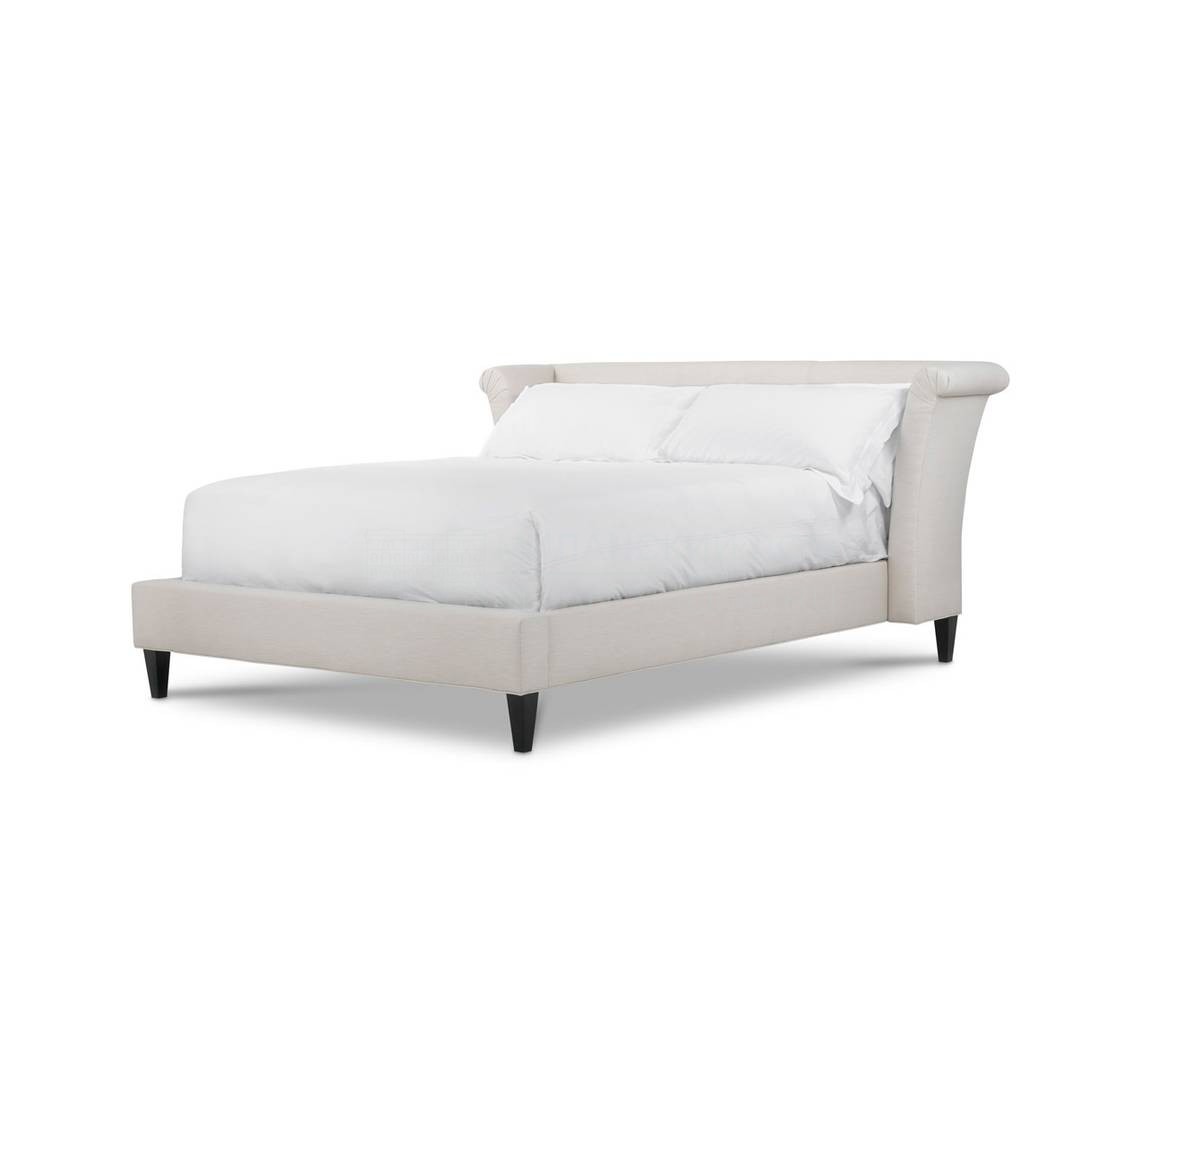 Кровать с мягким изголовьем RM Moder Queen Bed  из США фабрики BOLIER